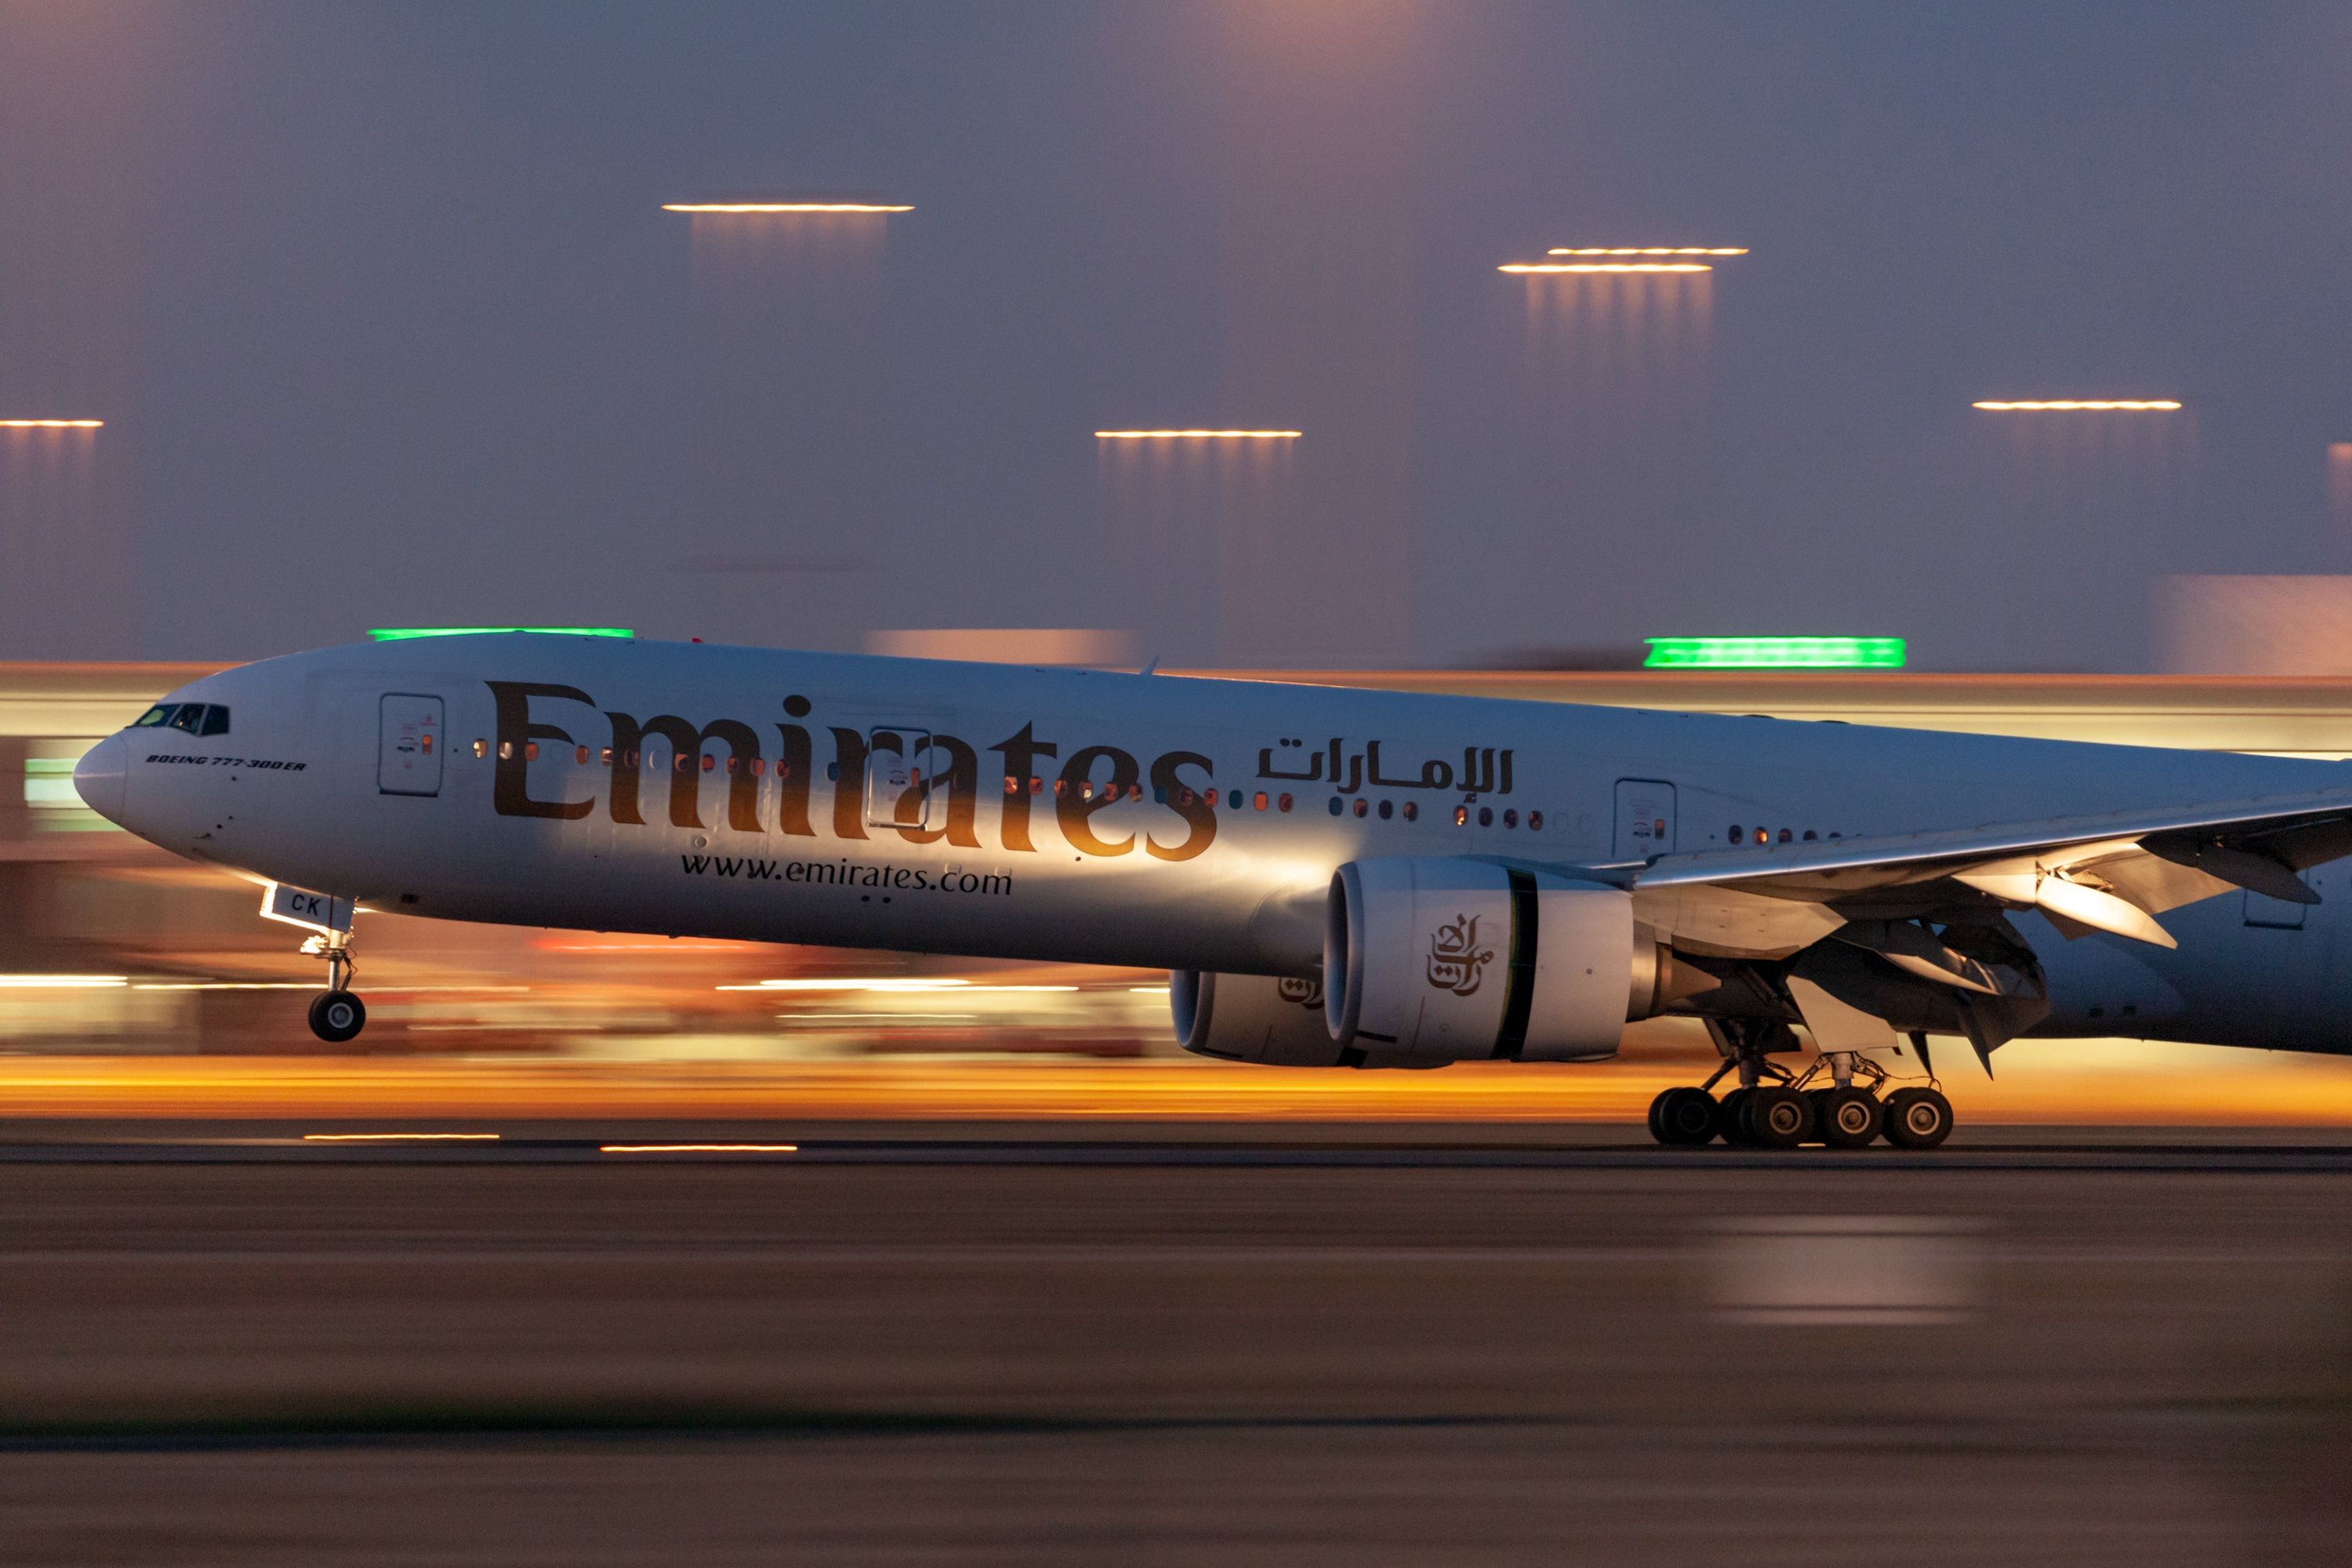 Emirates 777-300ER landing shutterstock_1305426019